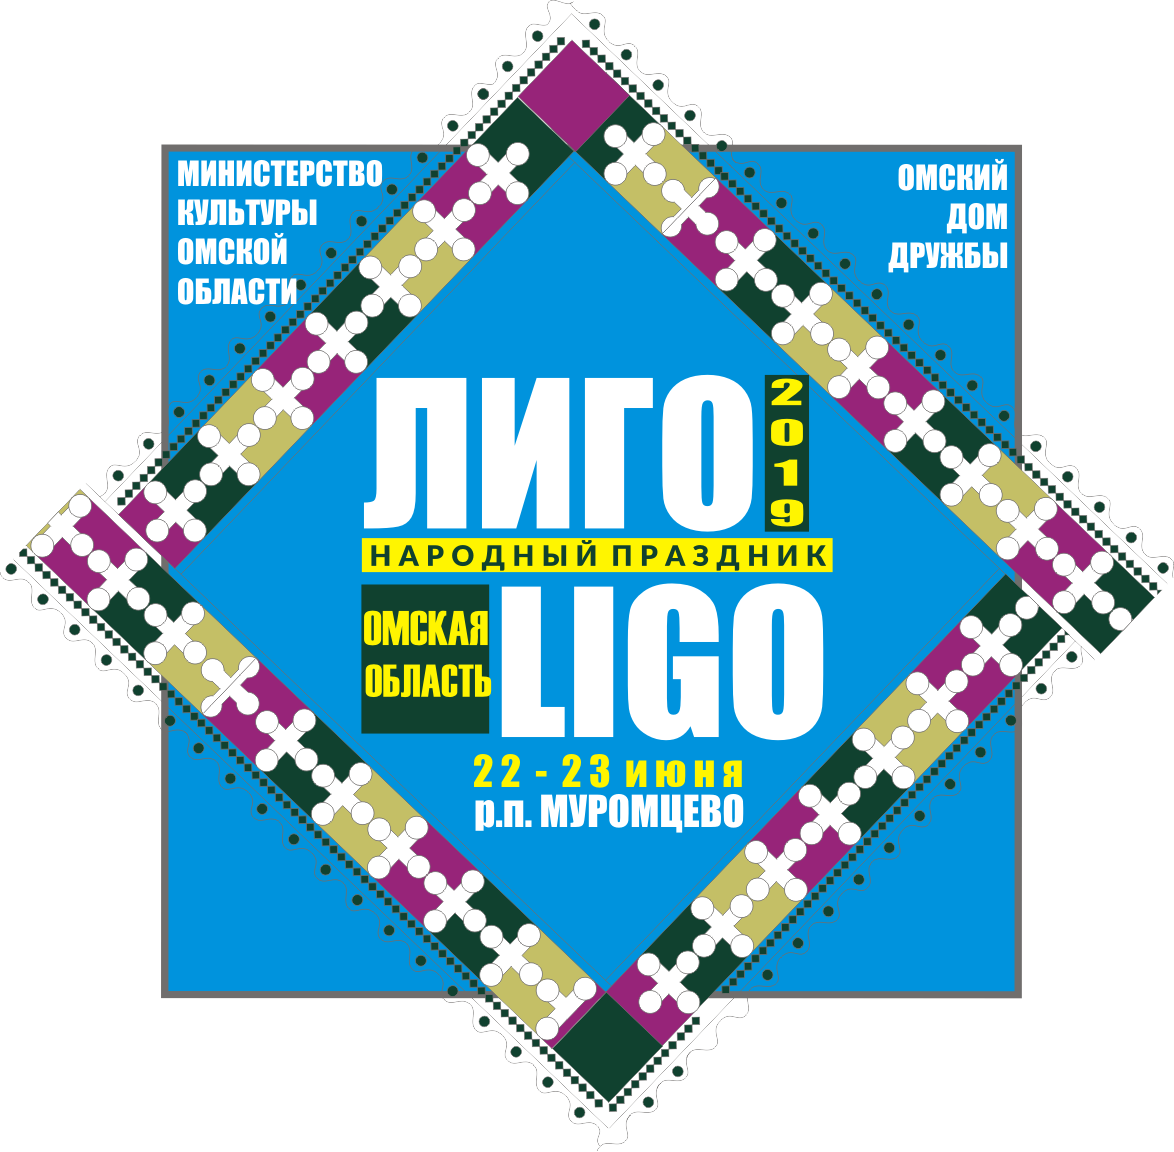 Народный праздник «Лиго»
22-23 июня 2019 года, р.п. Муромцево